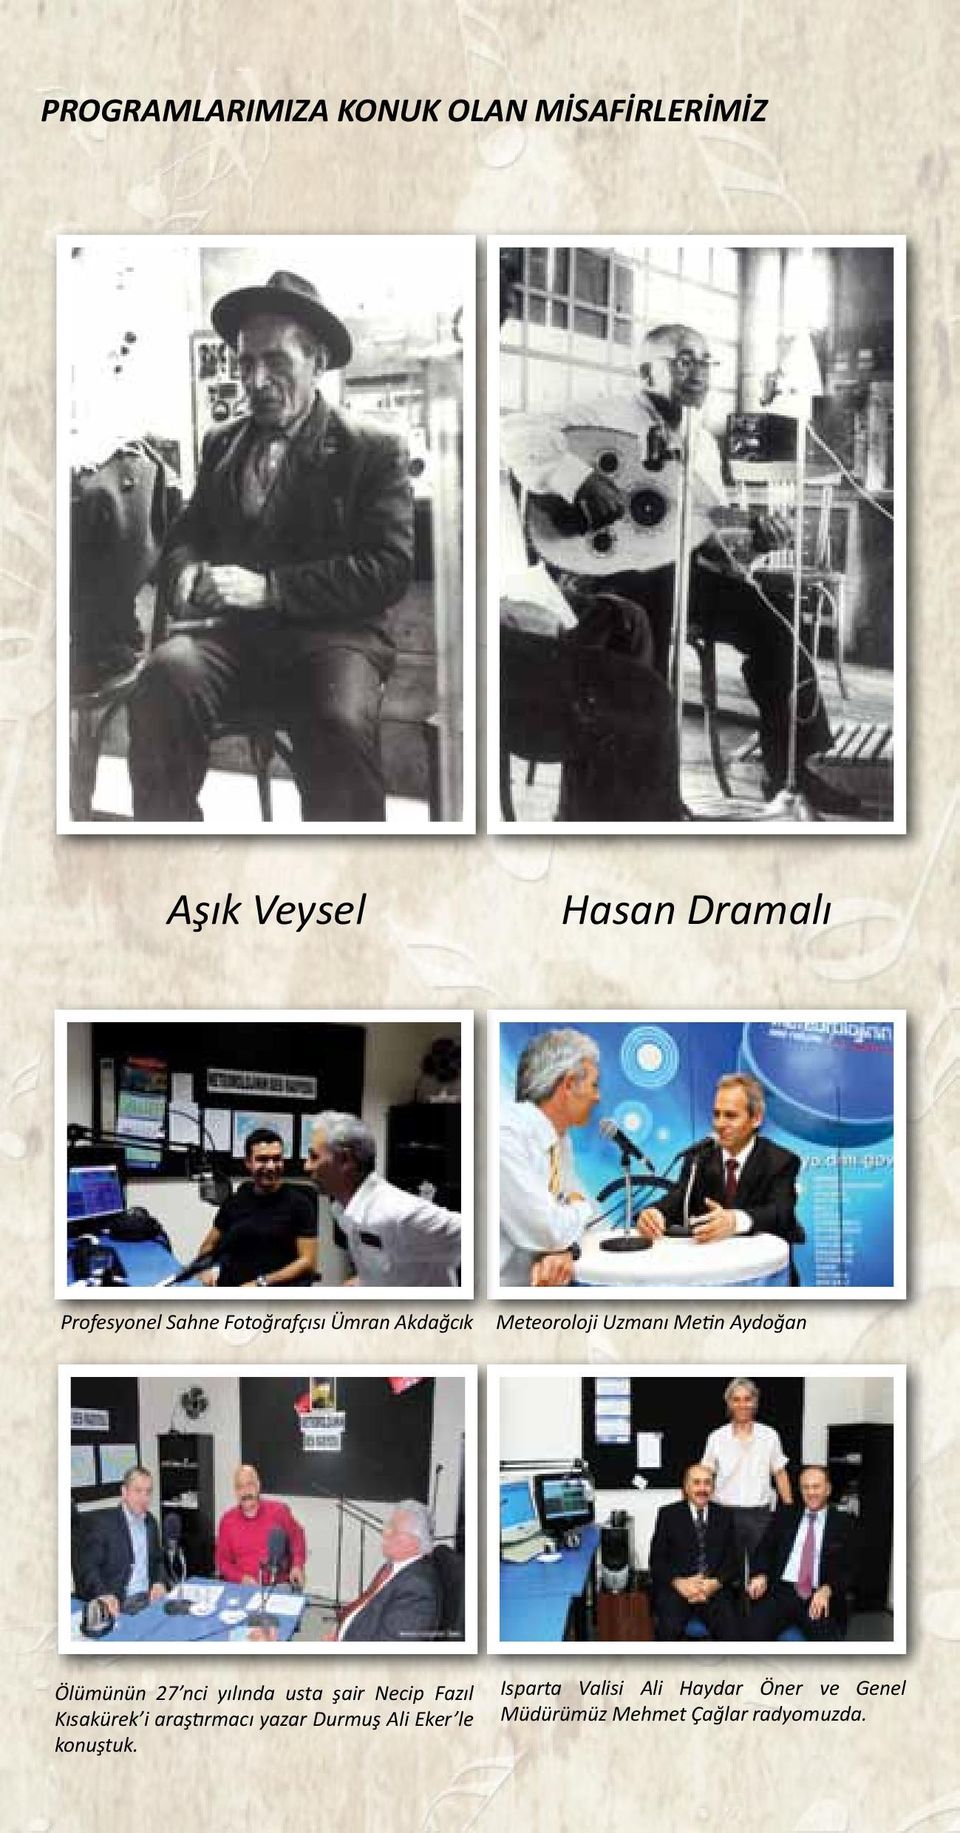 nci yılında usta şair Necip Fazıl Kısakürek i araştırmacı yazar Durmuş Ali Eker